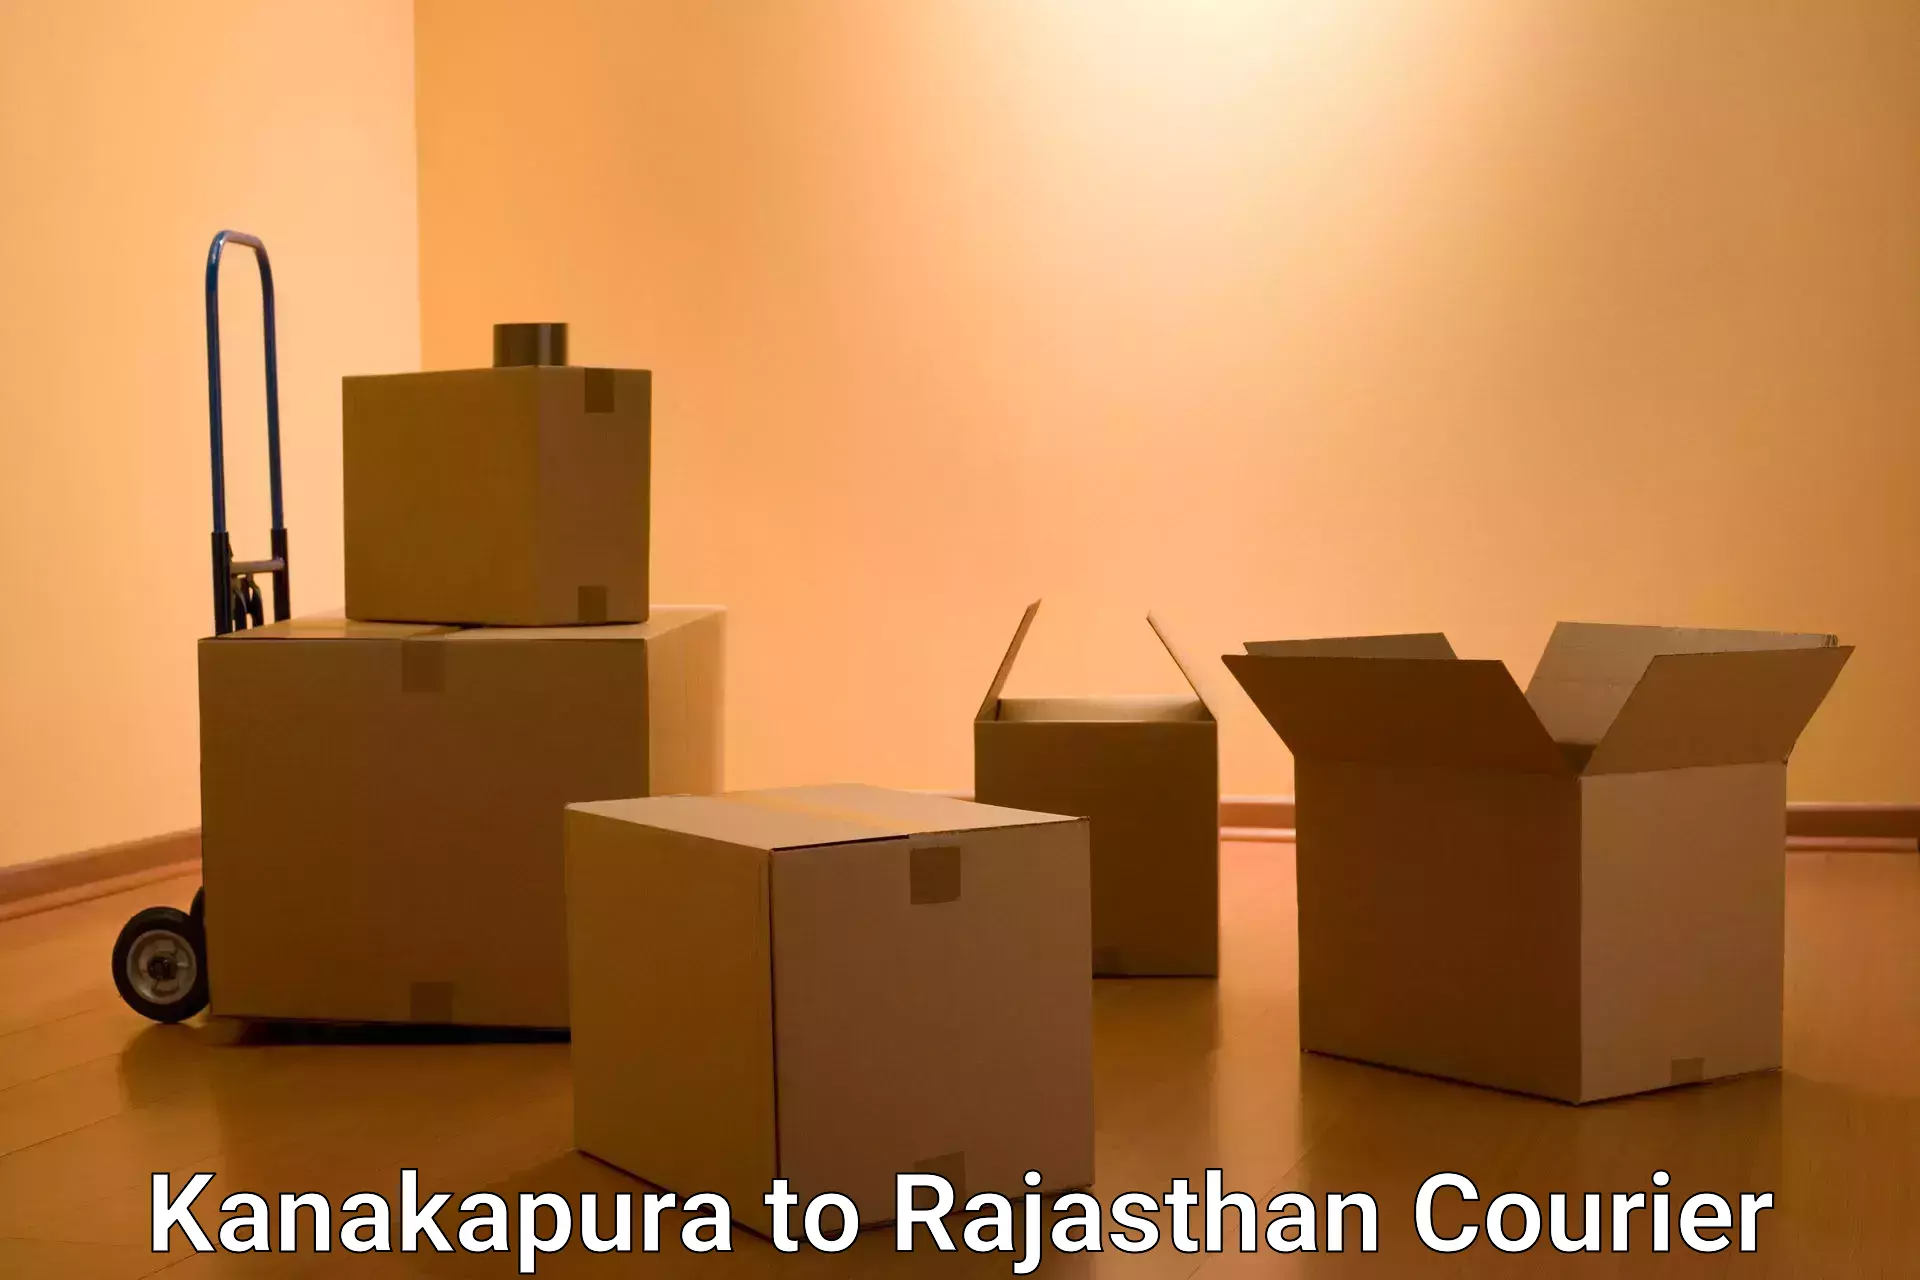 Regular parcel service Kanakapura to Suratgarh